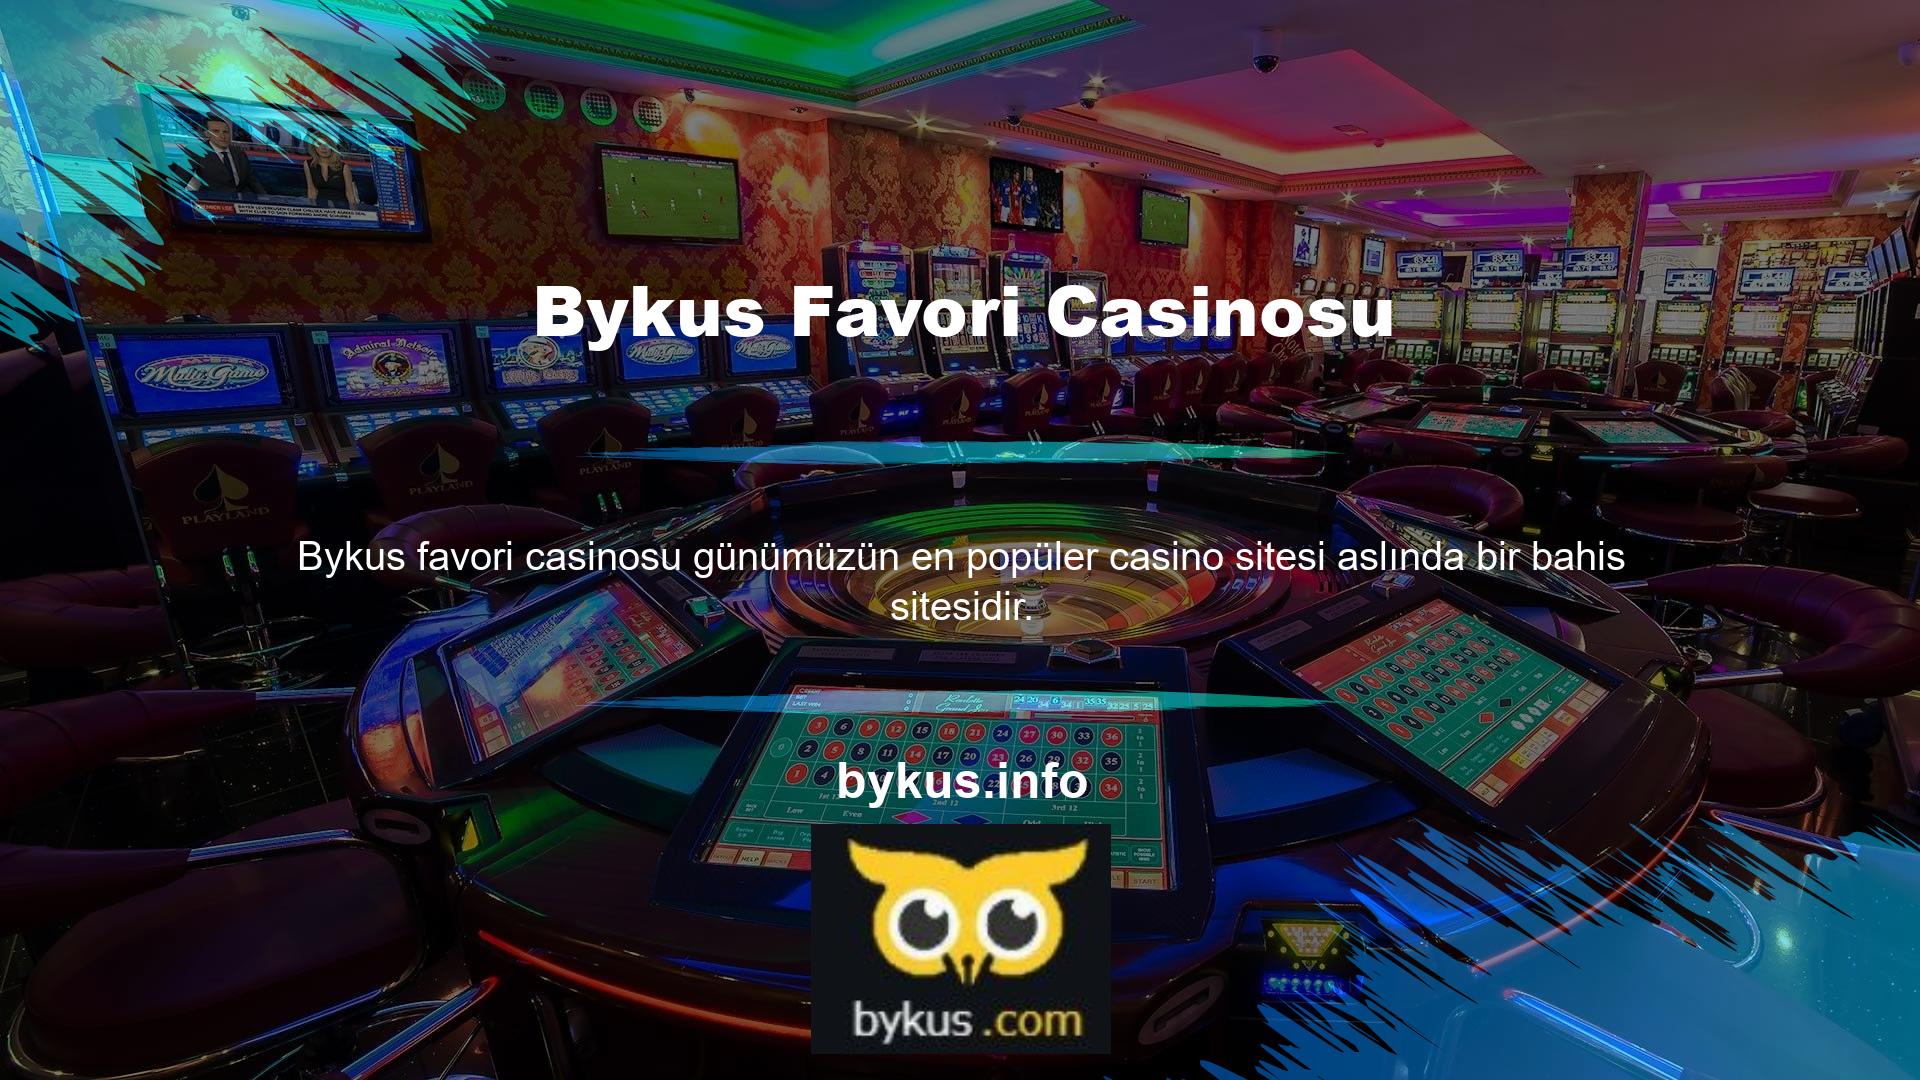 Ayrıca yalnızca aşağıdakiler gibi casino oyunları sunan siteleri de görebilirsiniz: Bykus en popüler casinodur